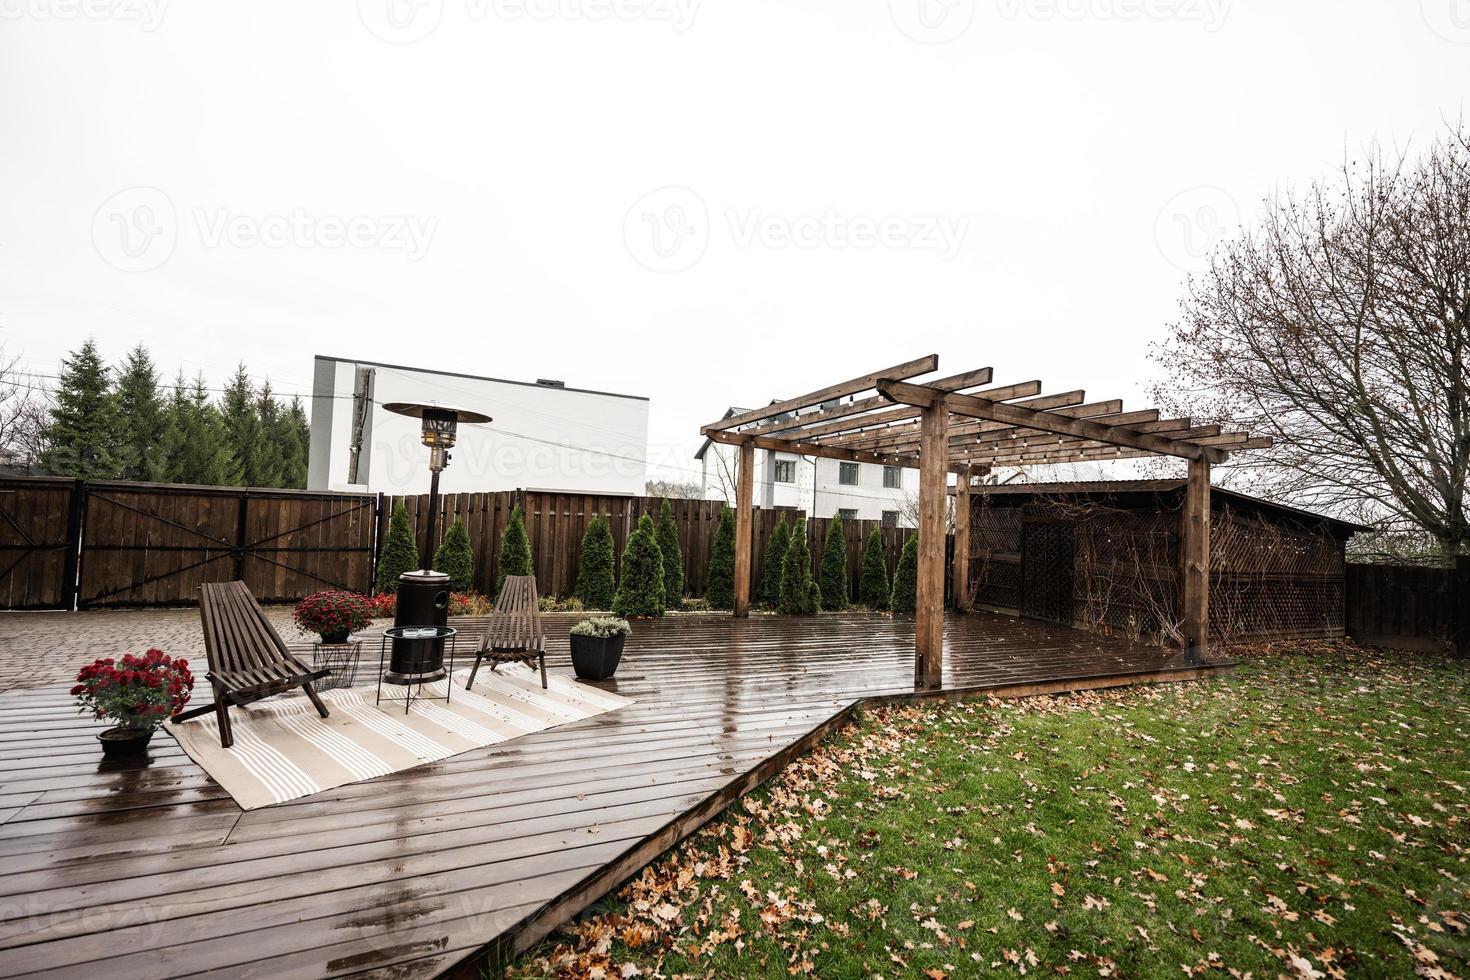 roestvrij staal metaal gas- buitenshuis patio kachel met houten stoelen en pot met bloemen Bij nat terras. plaats naar kom tot rust. foto